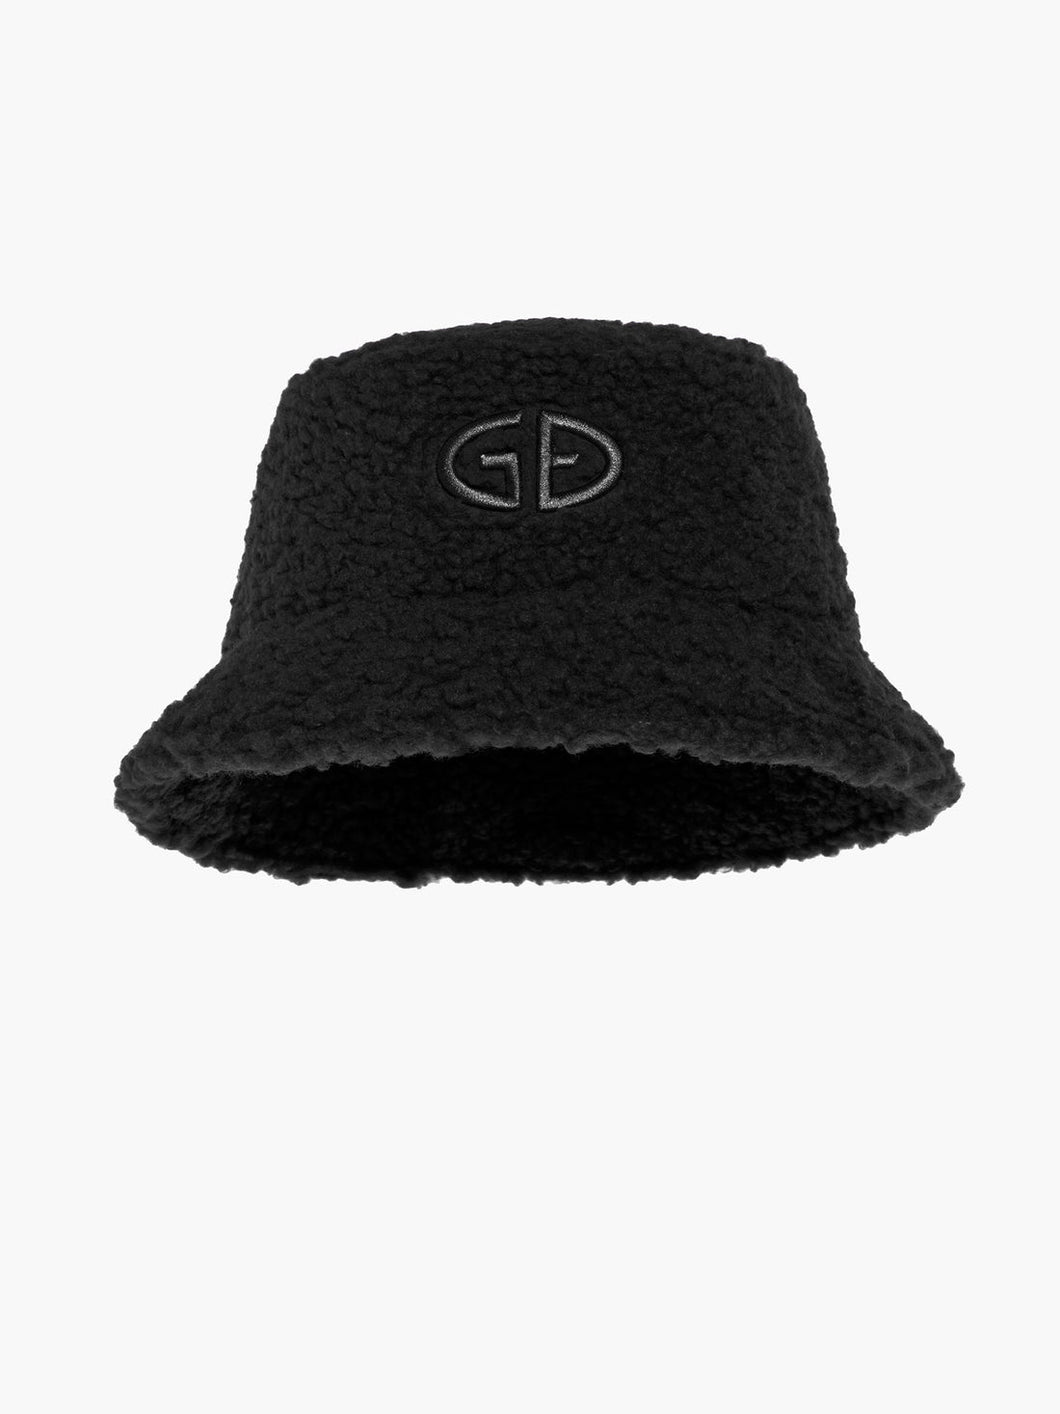 Teds Bucket Hat - Black